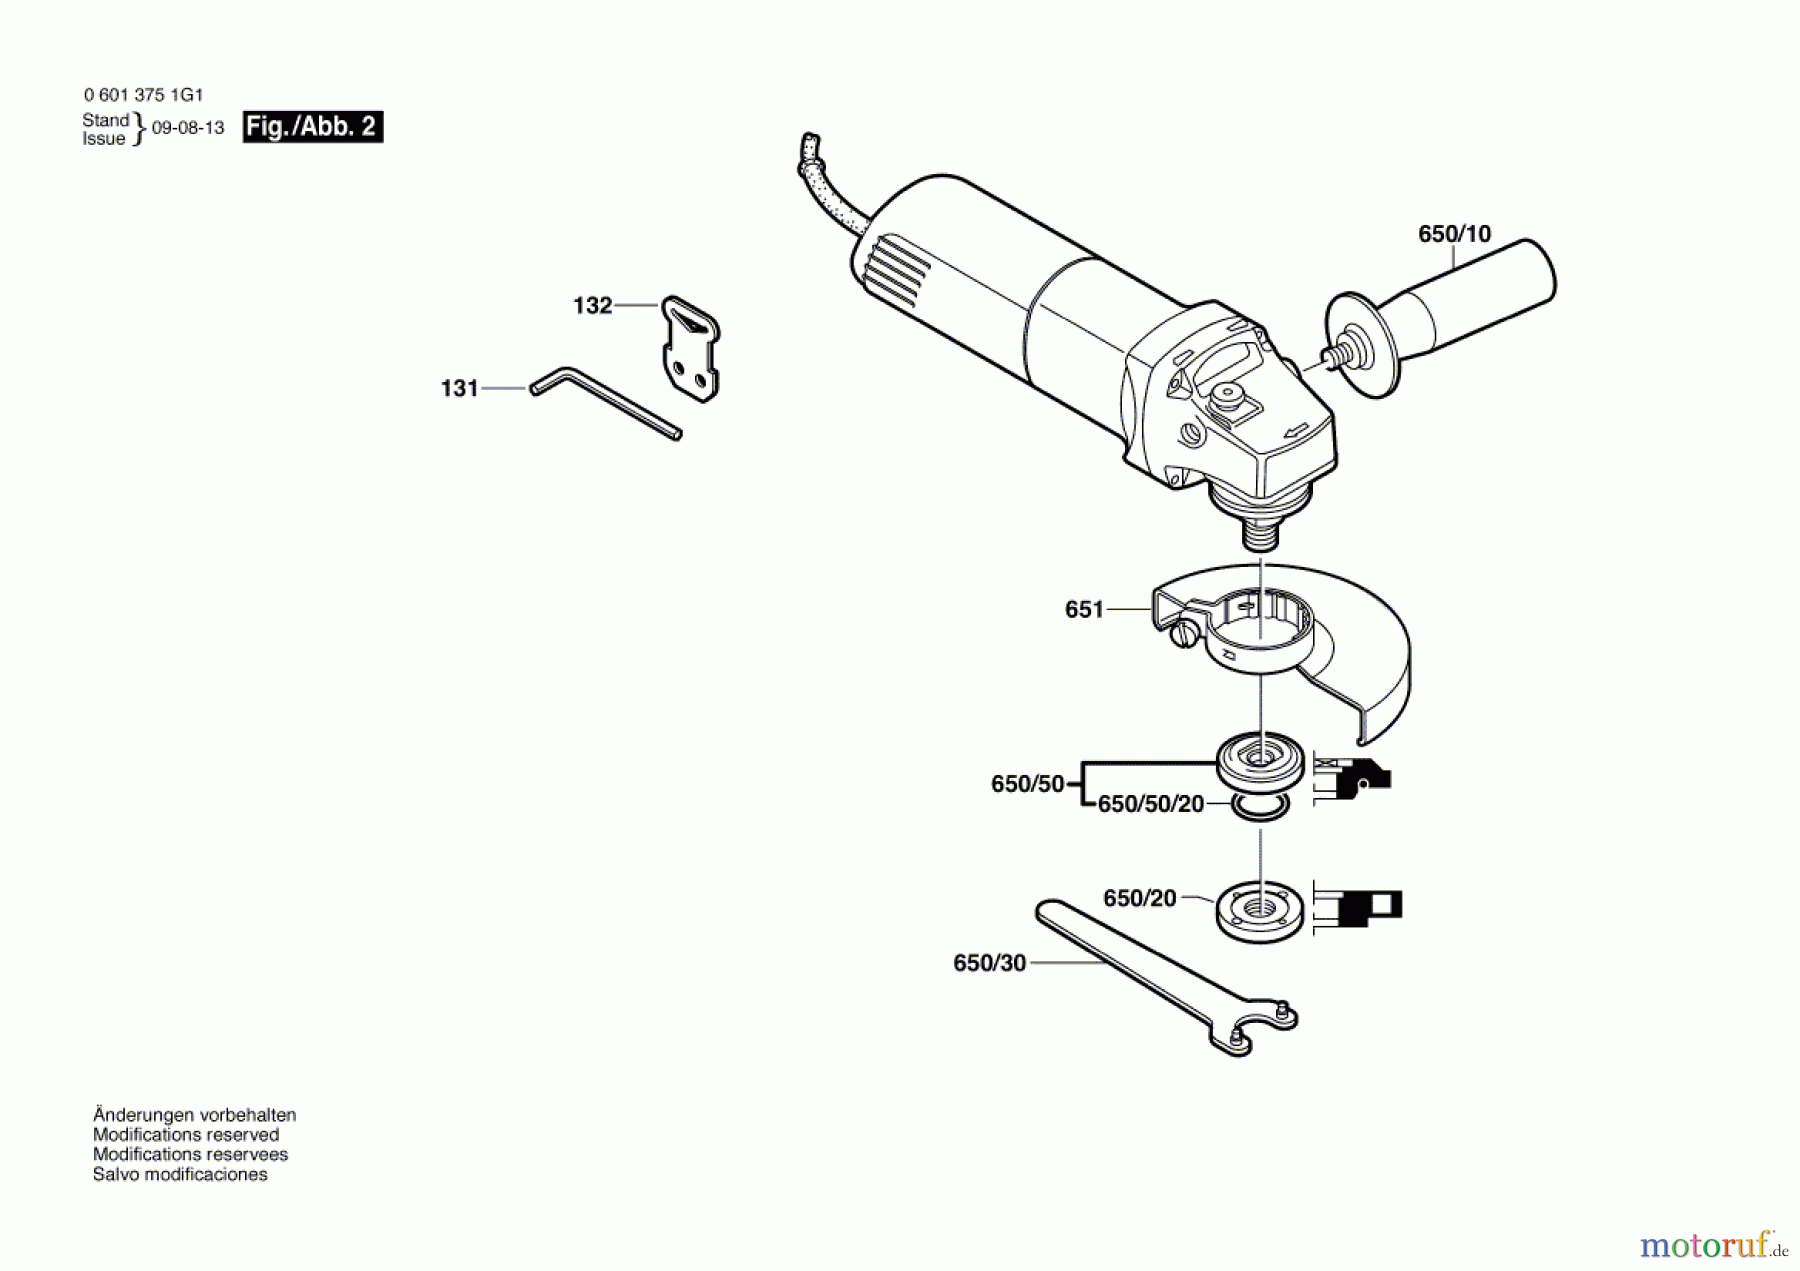  Bosch Werkzeug Winkelschleifer WKS 125 Seite 2